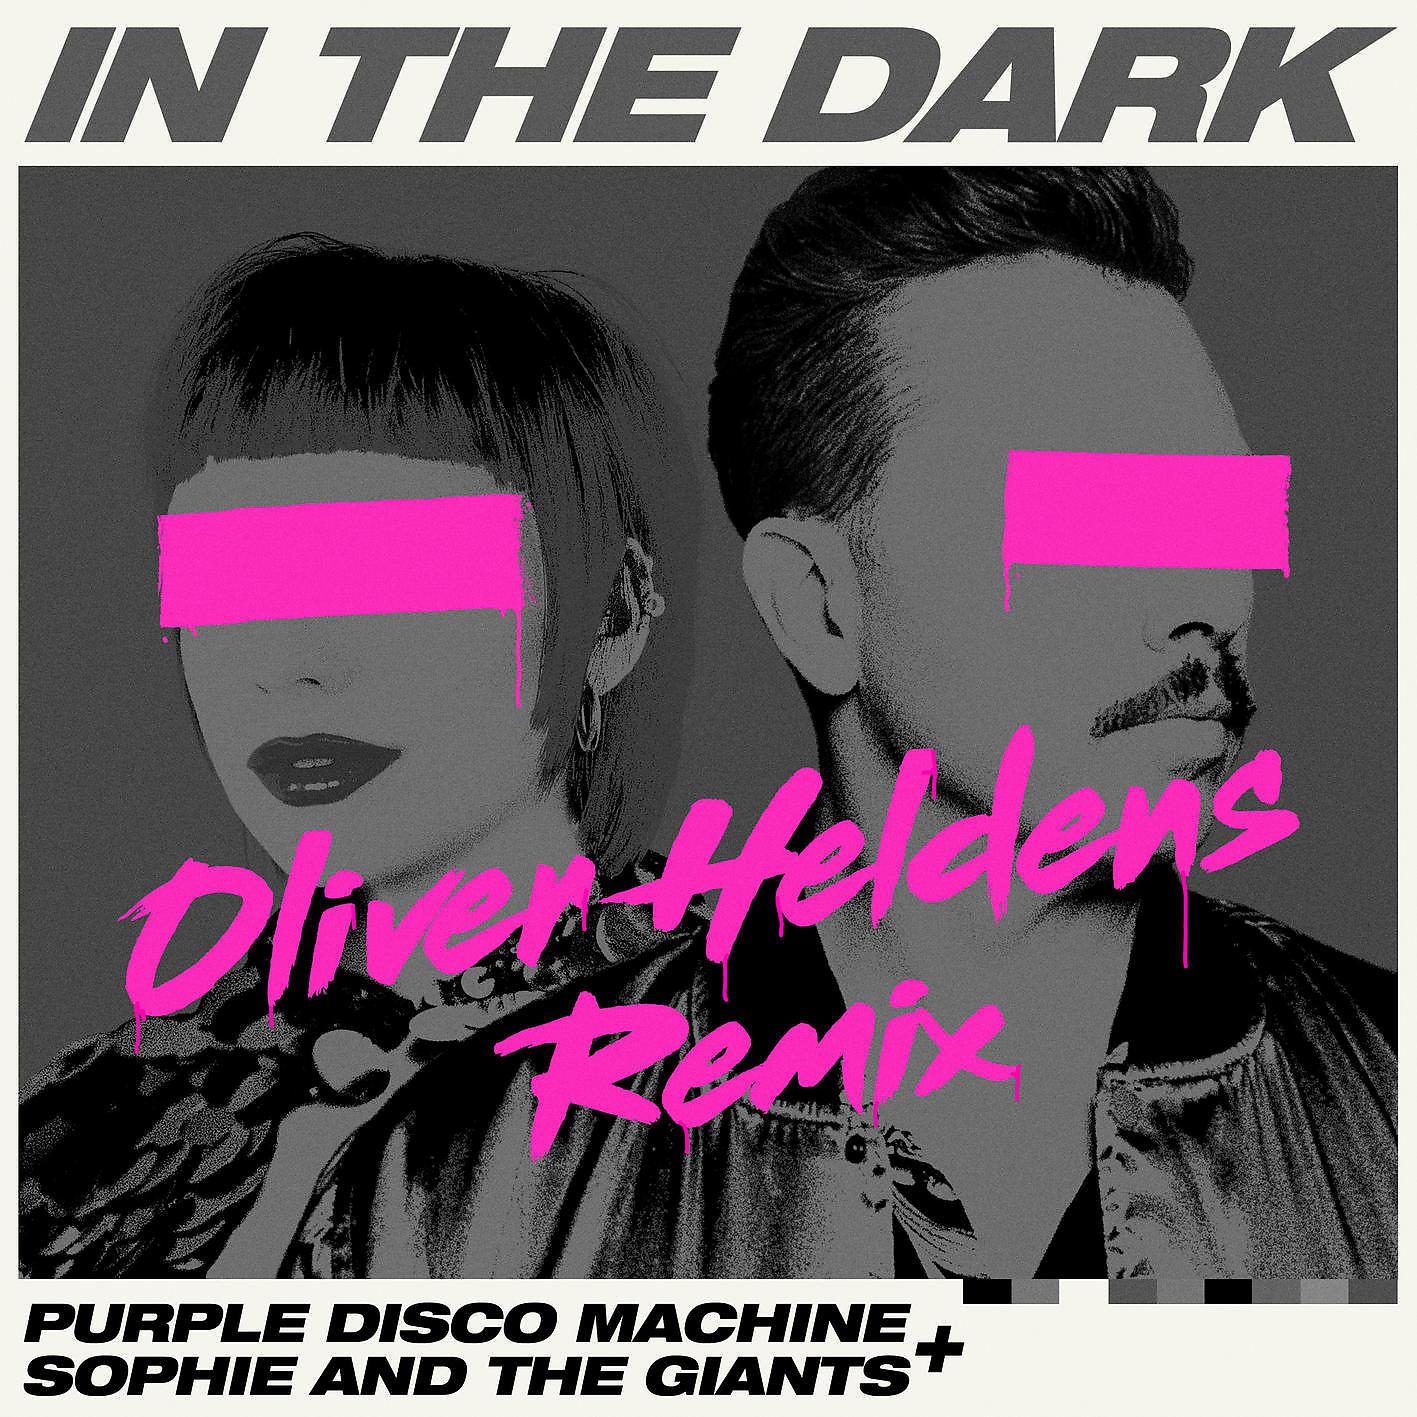 Purple disco machine higher ground